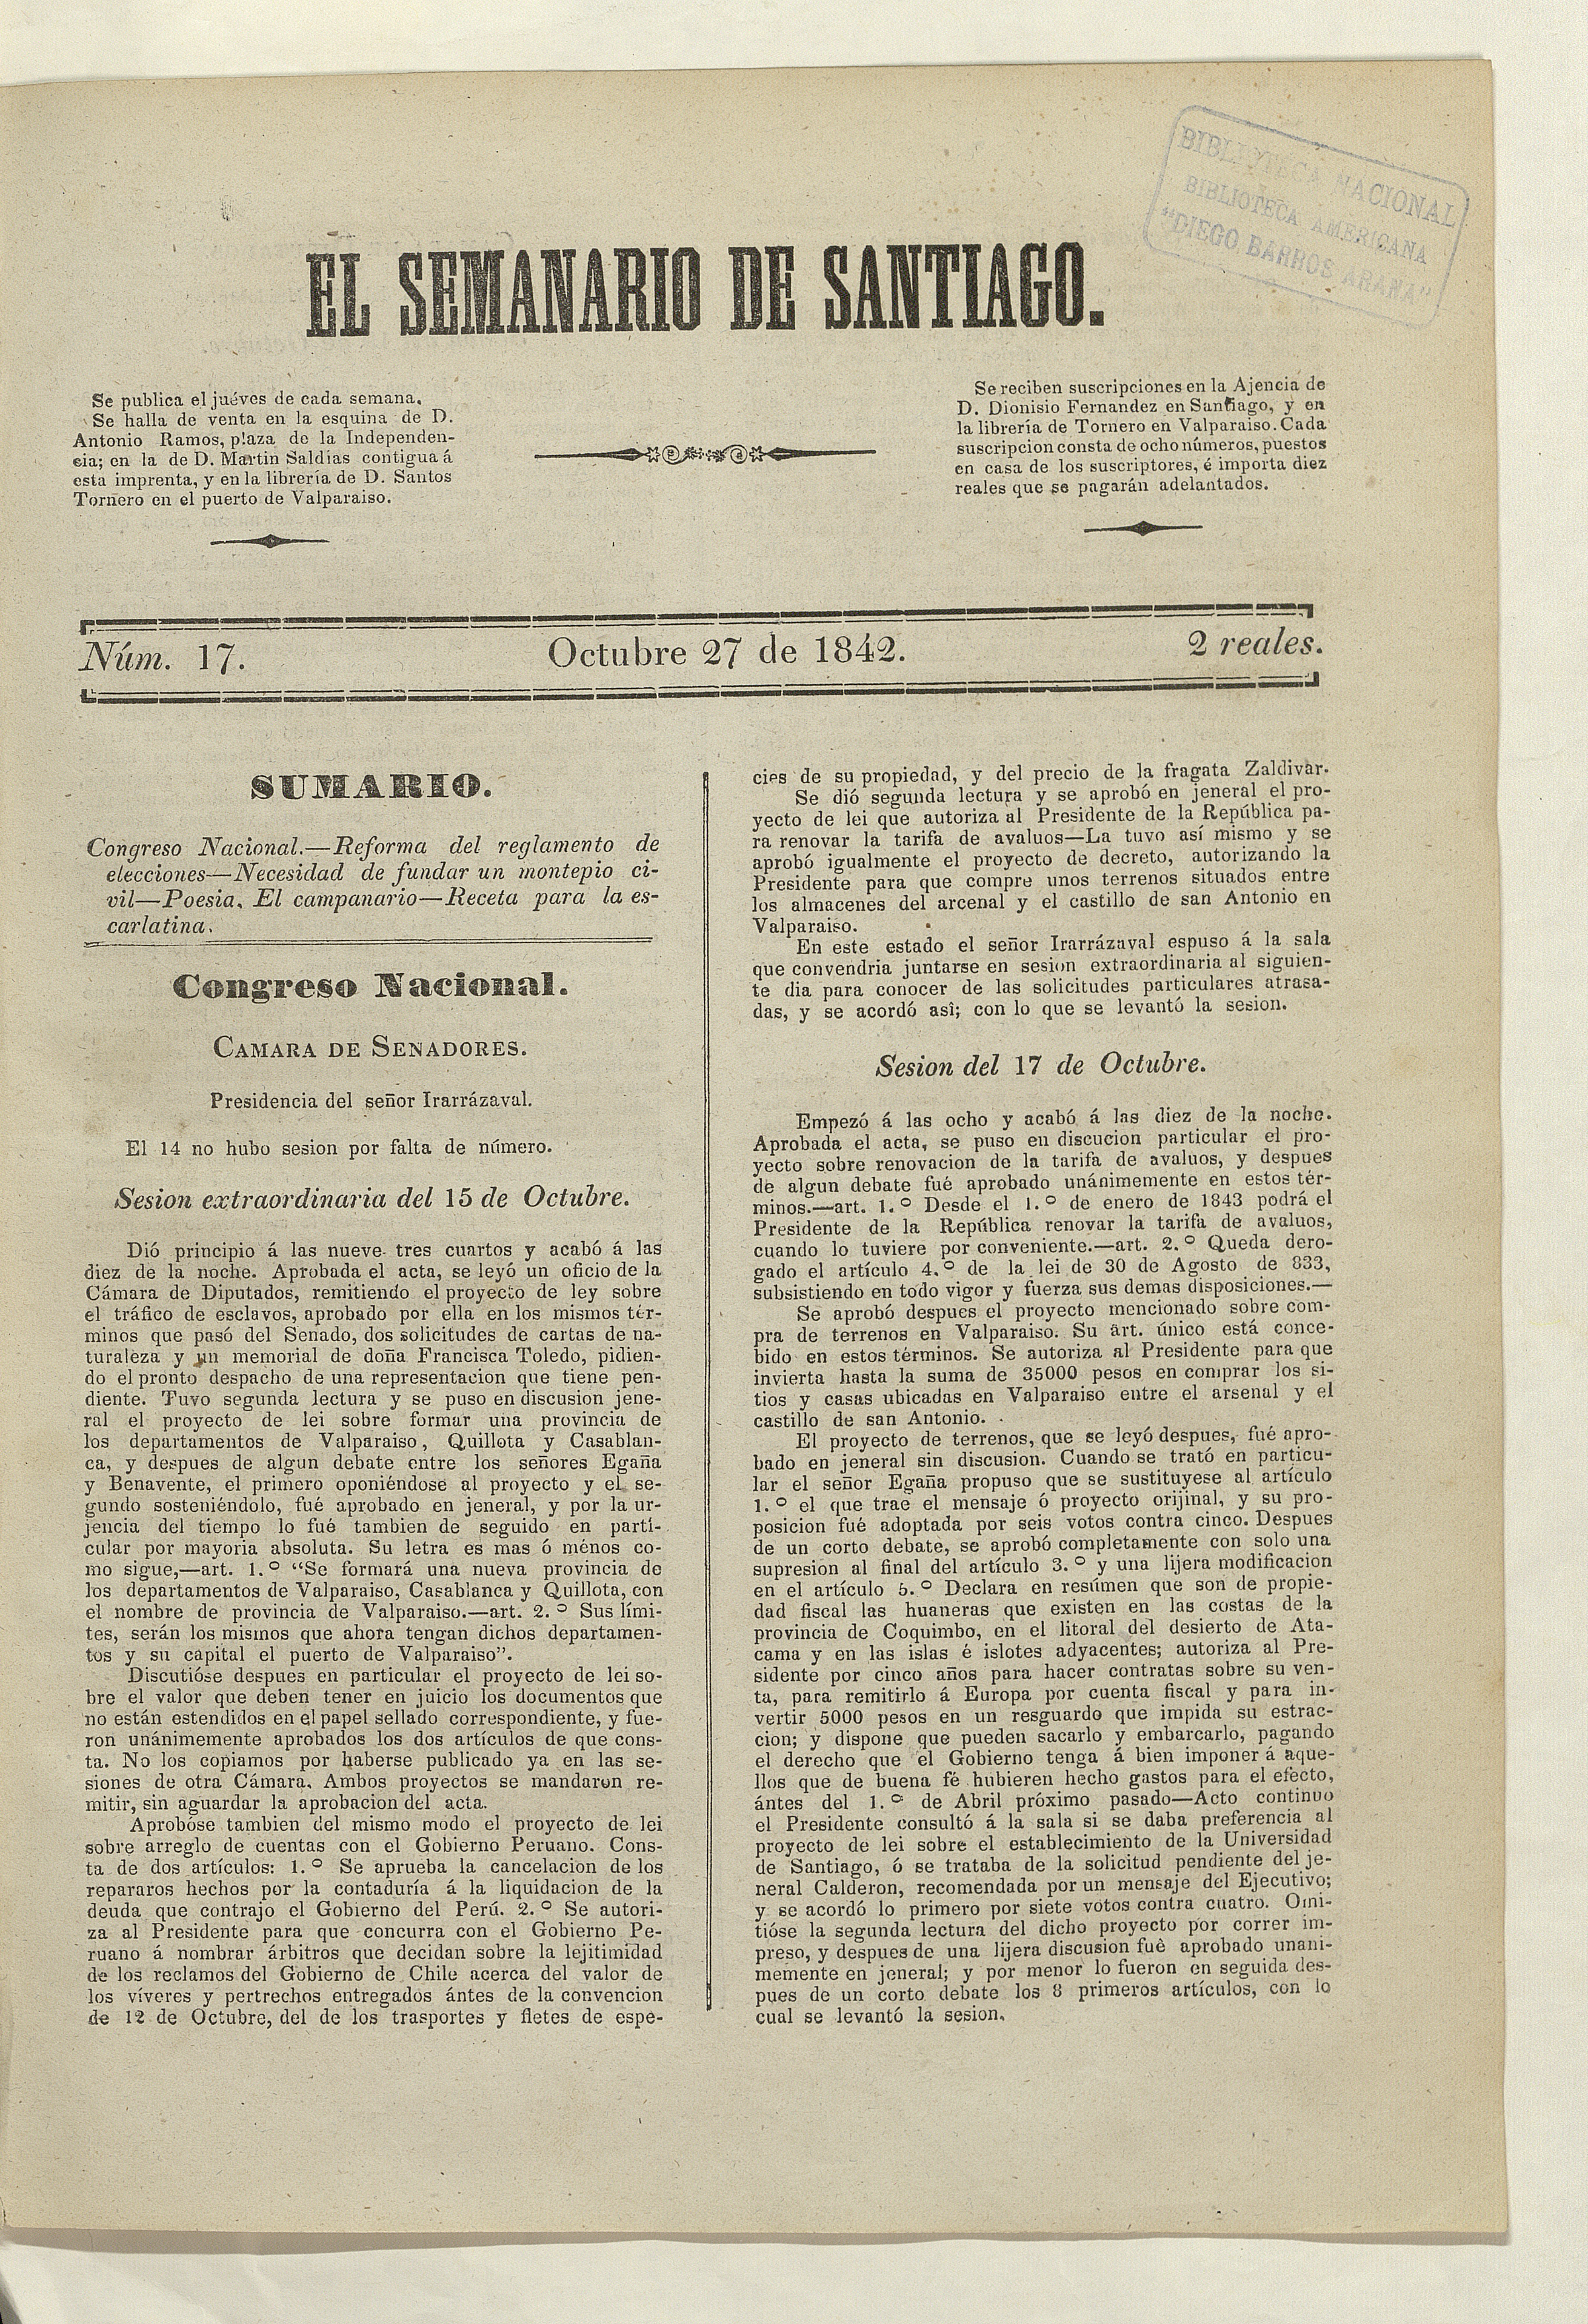 El Semanario de Santiago: número 17, 27 de octubre de 1842